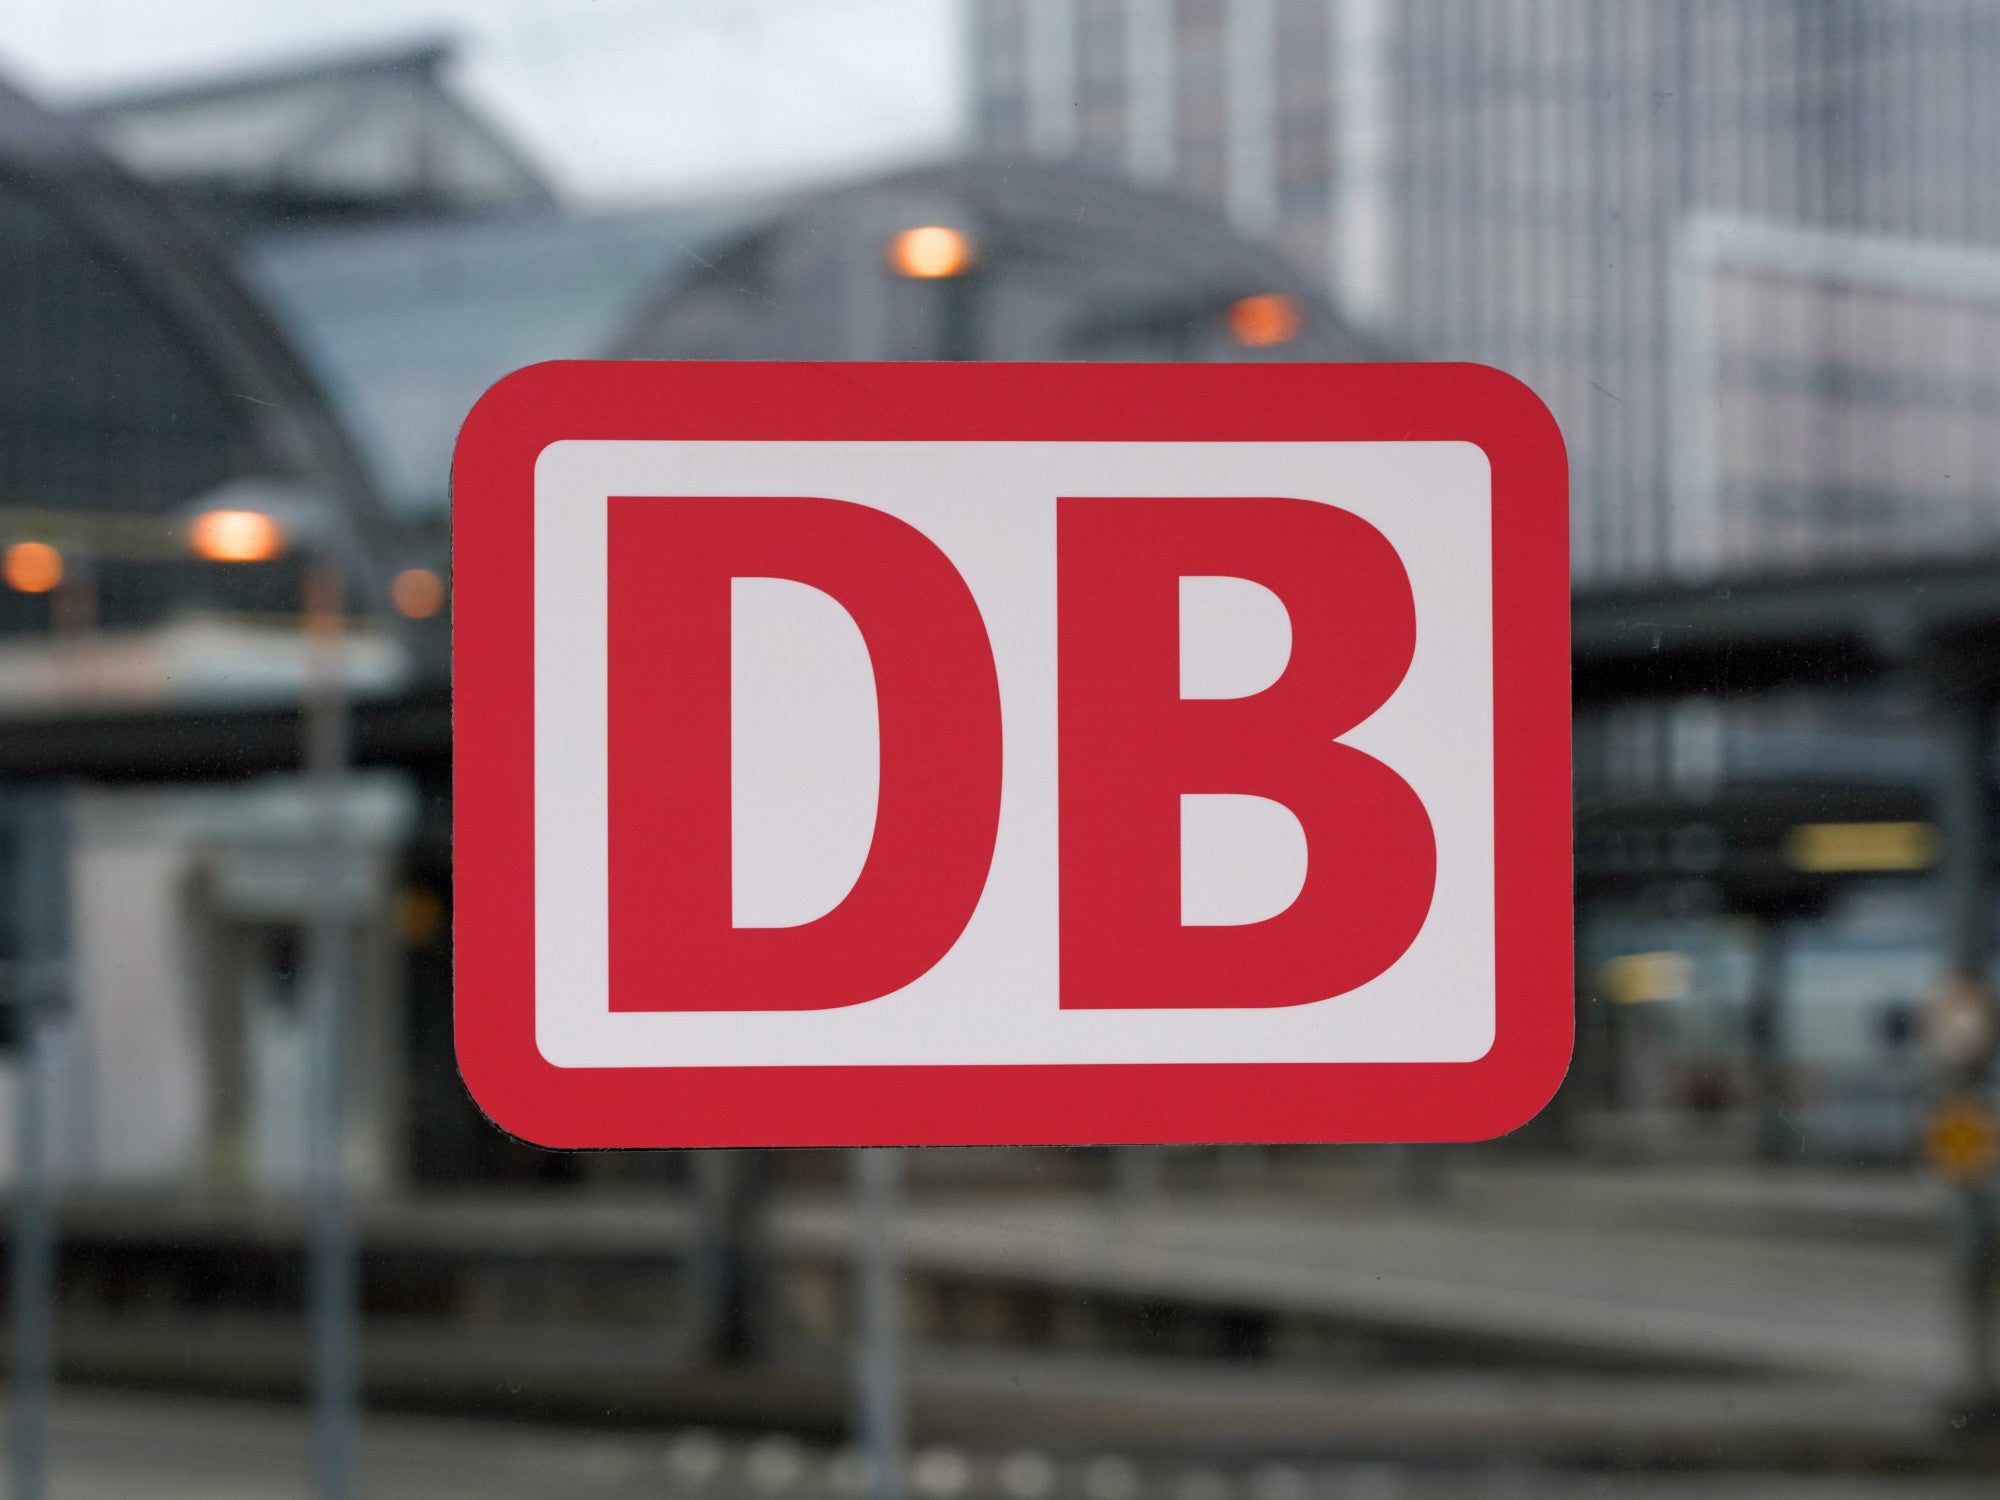 #Ärger garantiert: Bahn kündigt massive Störungen an